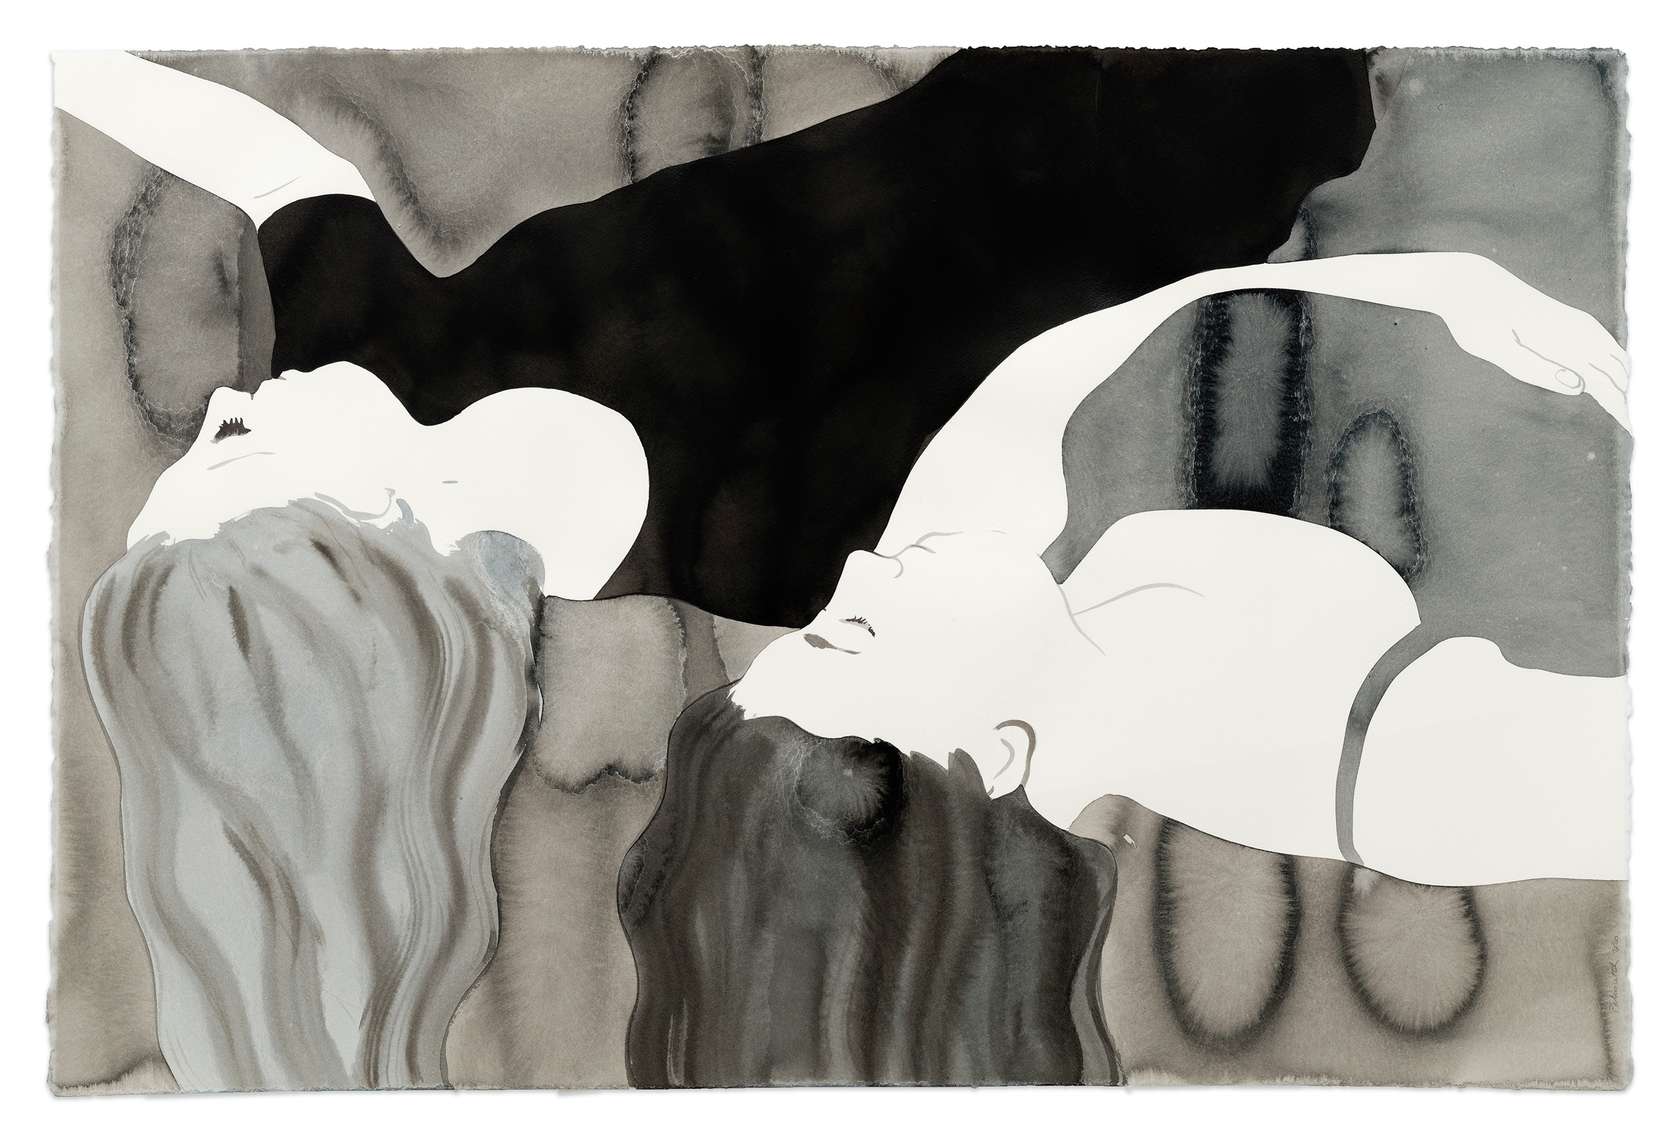 Françoise Pétrovitch, The Girls, 2020 Lavis d’encre sur papier80 × 120 cm / 31 1/2 × 47 2/8 in.96 × 137 × 4.5 cm / 37 6/8 × 53 7/8 × 17 6/8 in. (encadré/framed)